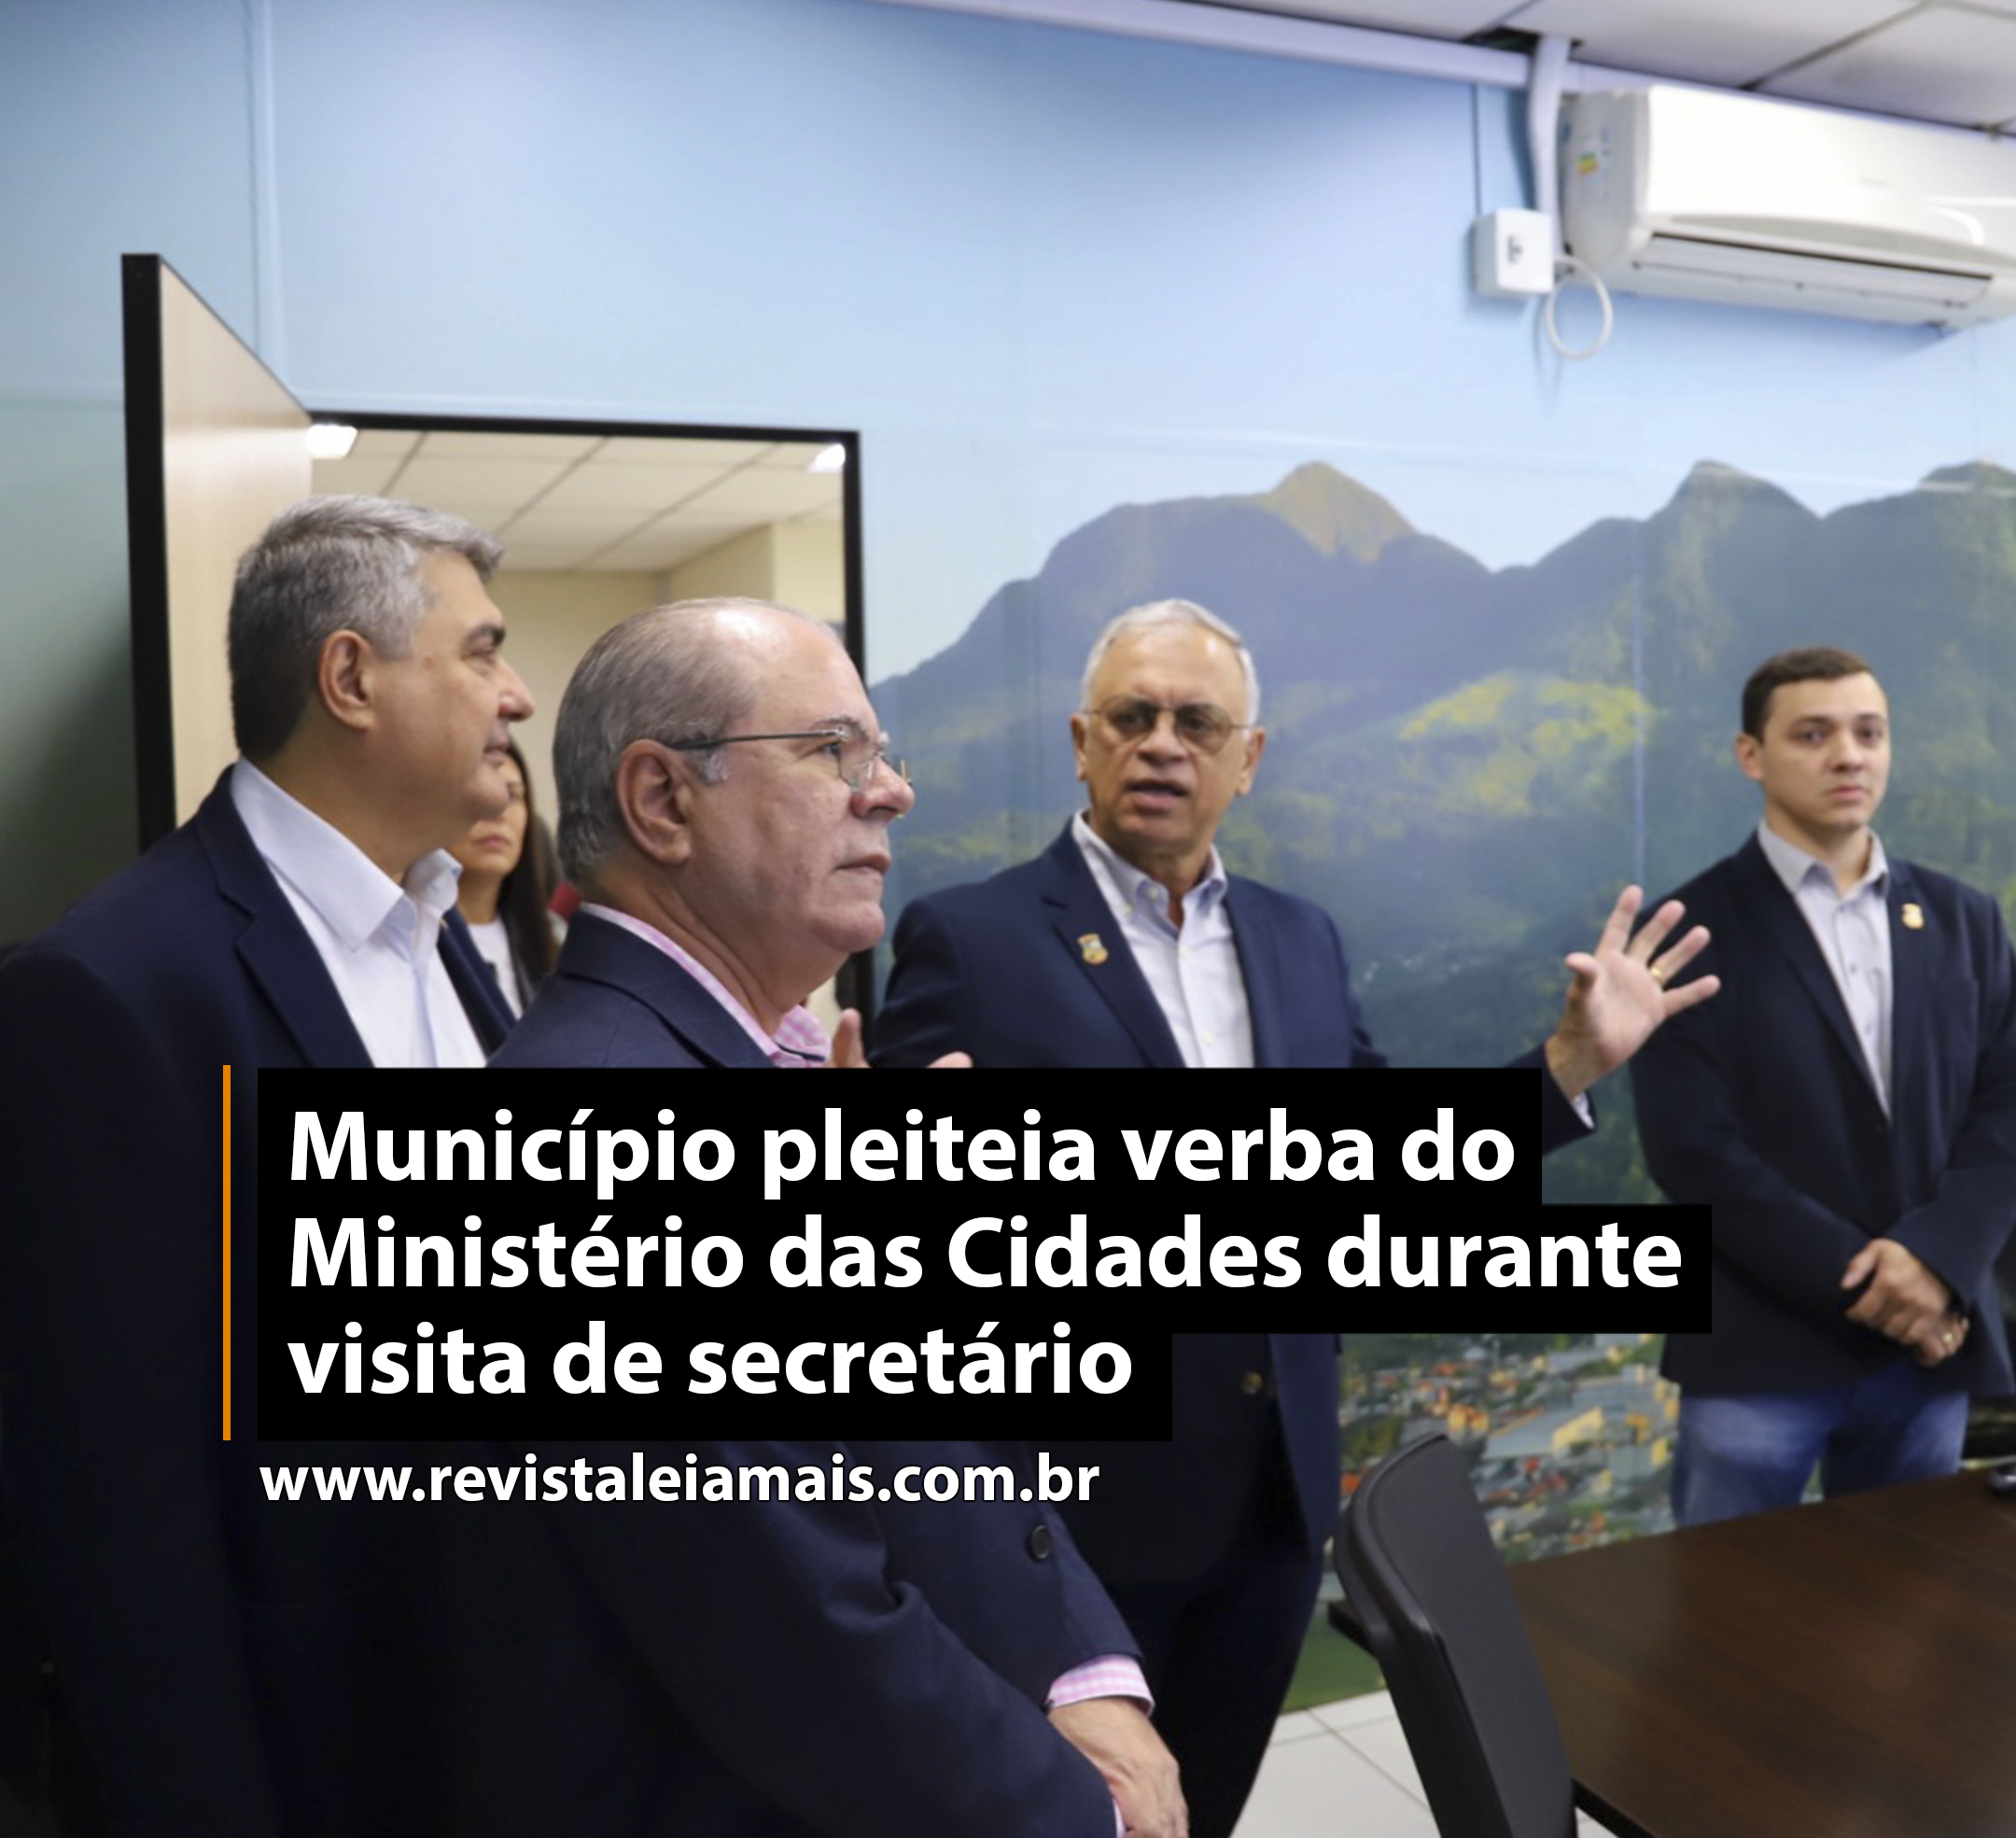 Município pleiteia verba do Ministério das Cidades durante visita de secretário